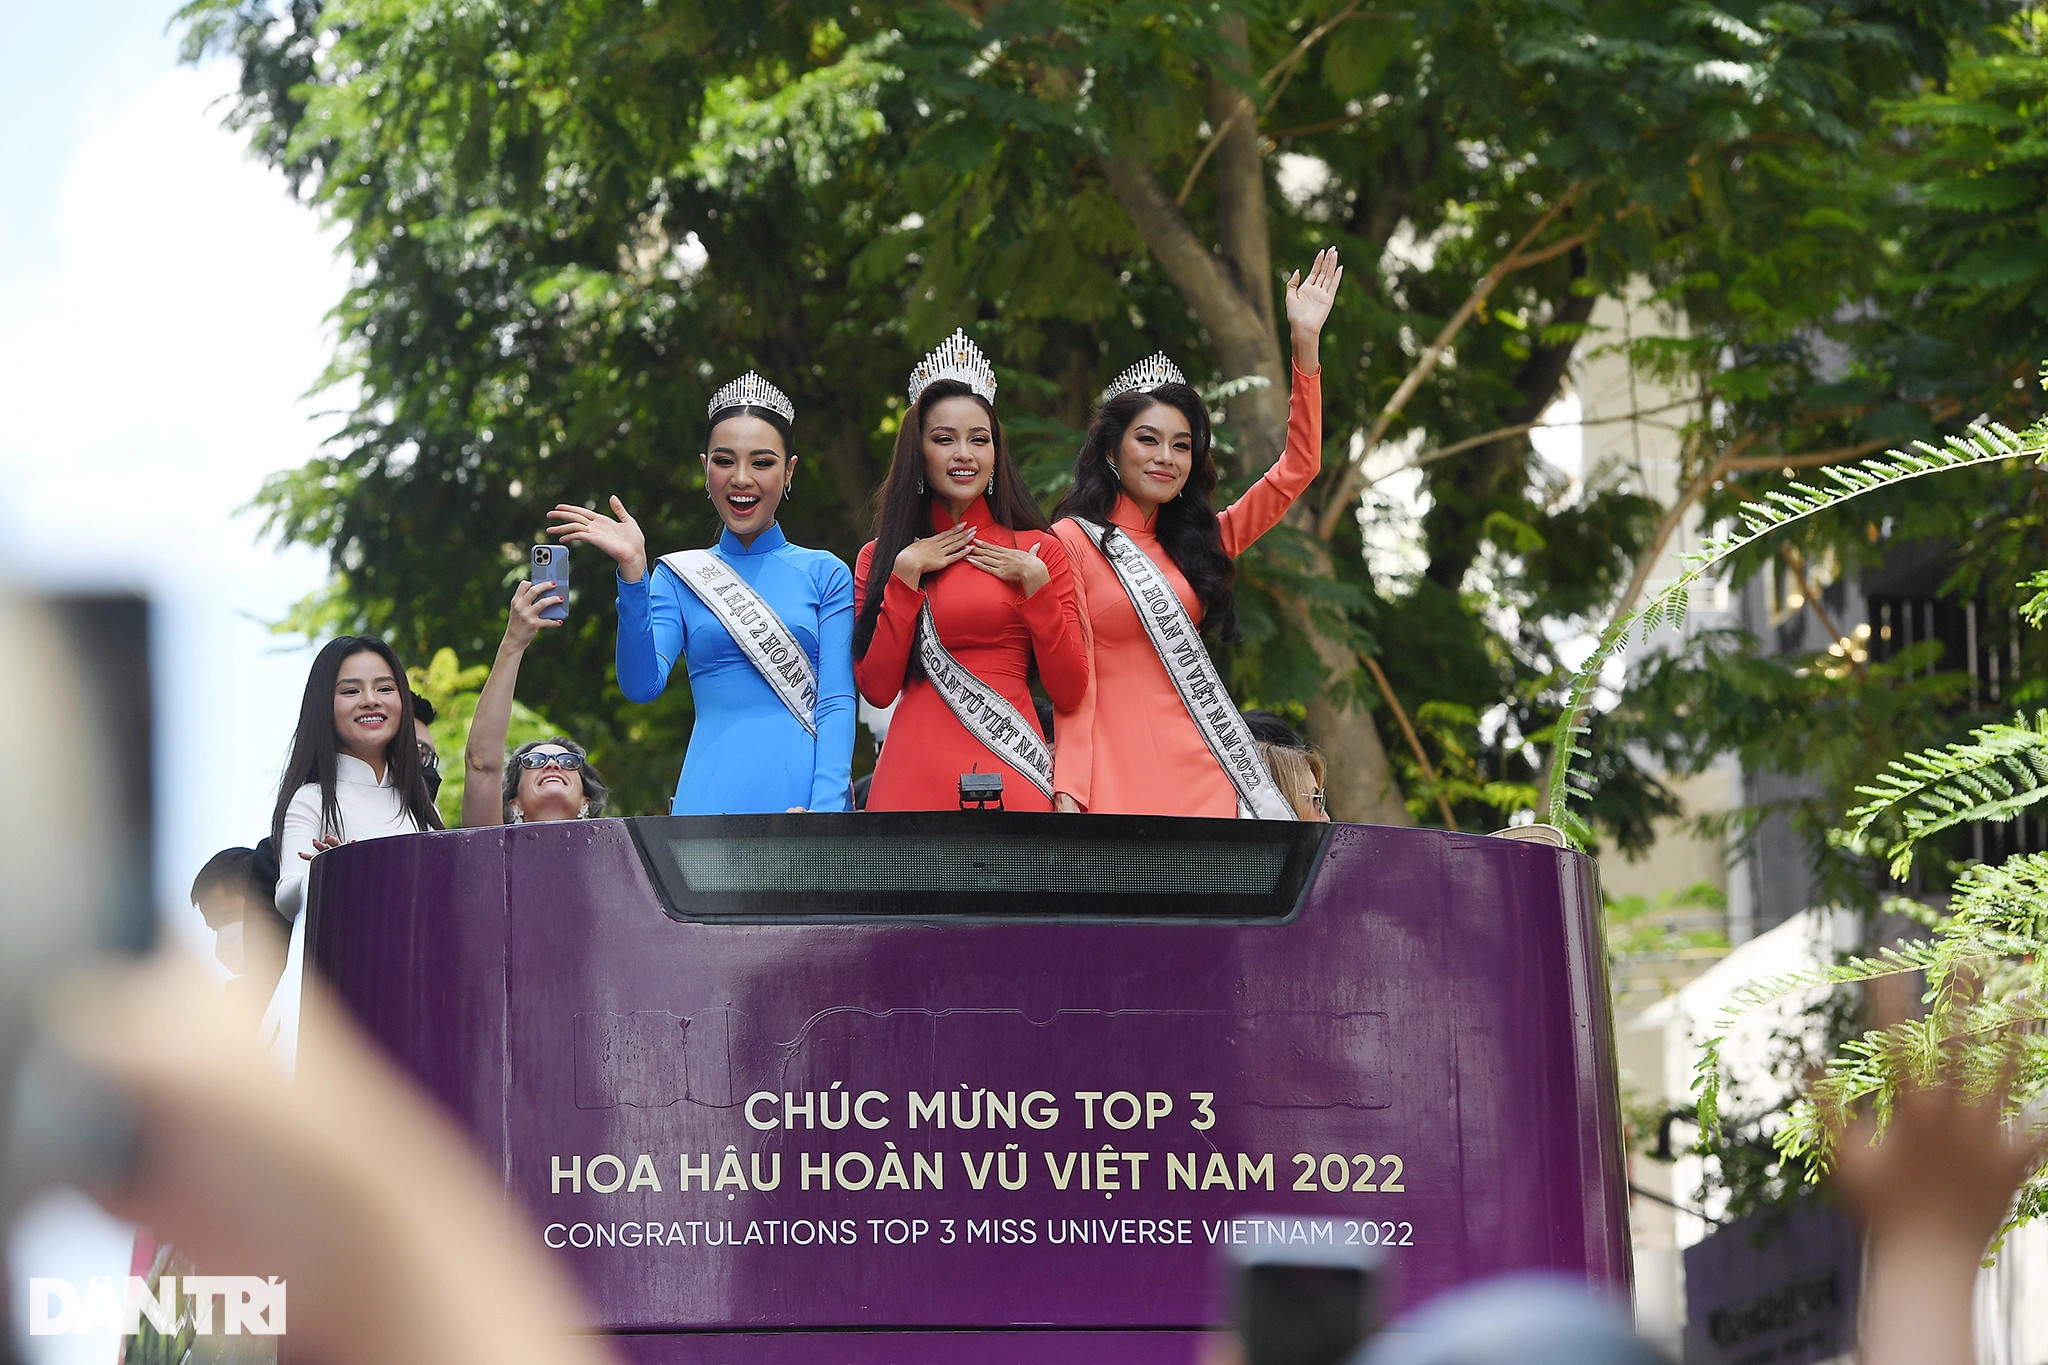 Tân Hoa hậu Hoàn vũ Việt Nam Ngọc Châu xúc động chào ra mắt người dân TPHCM - 1